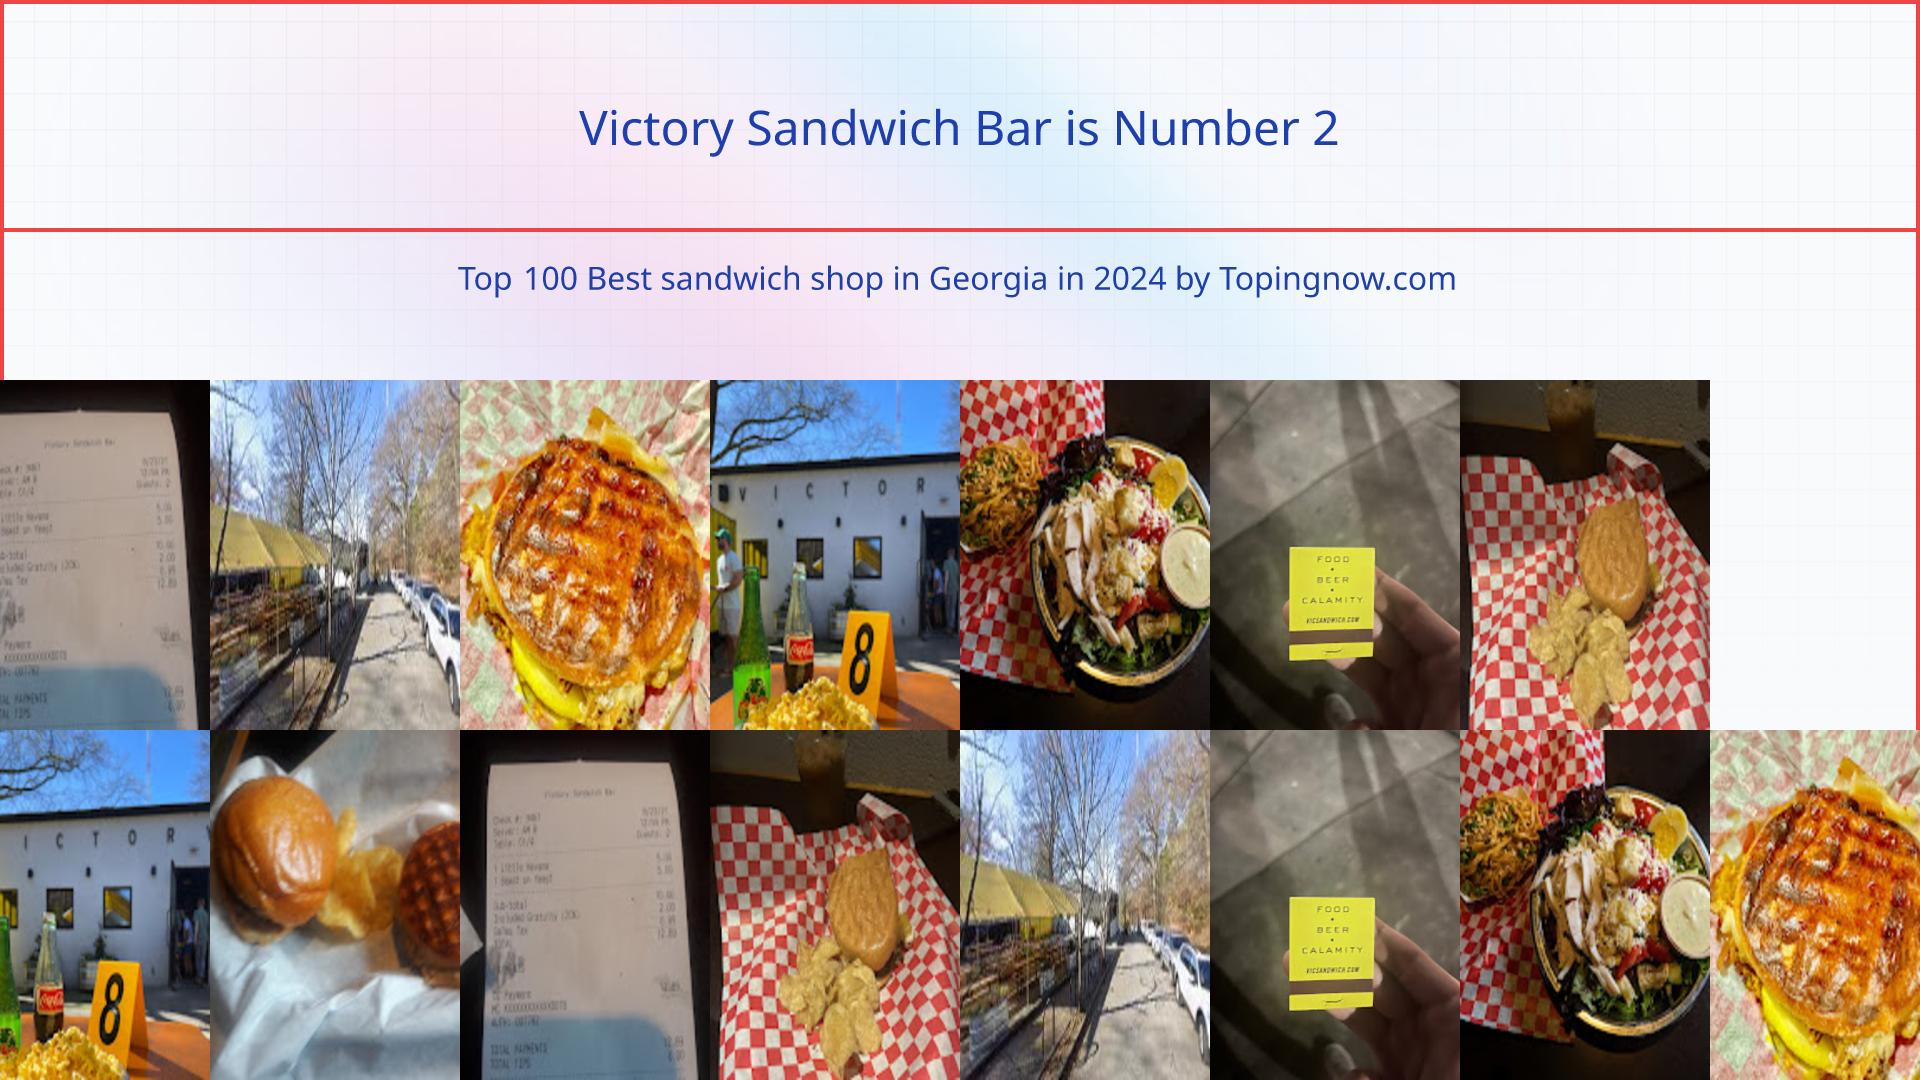 Victory Sandwich Bar: Top 100 Best sandwich shop in Georgia in 2024